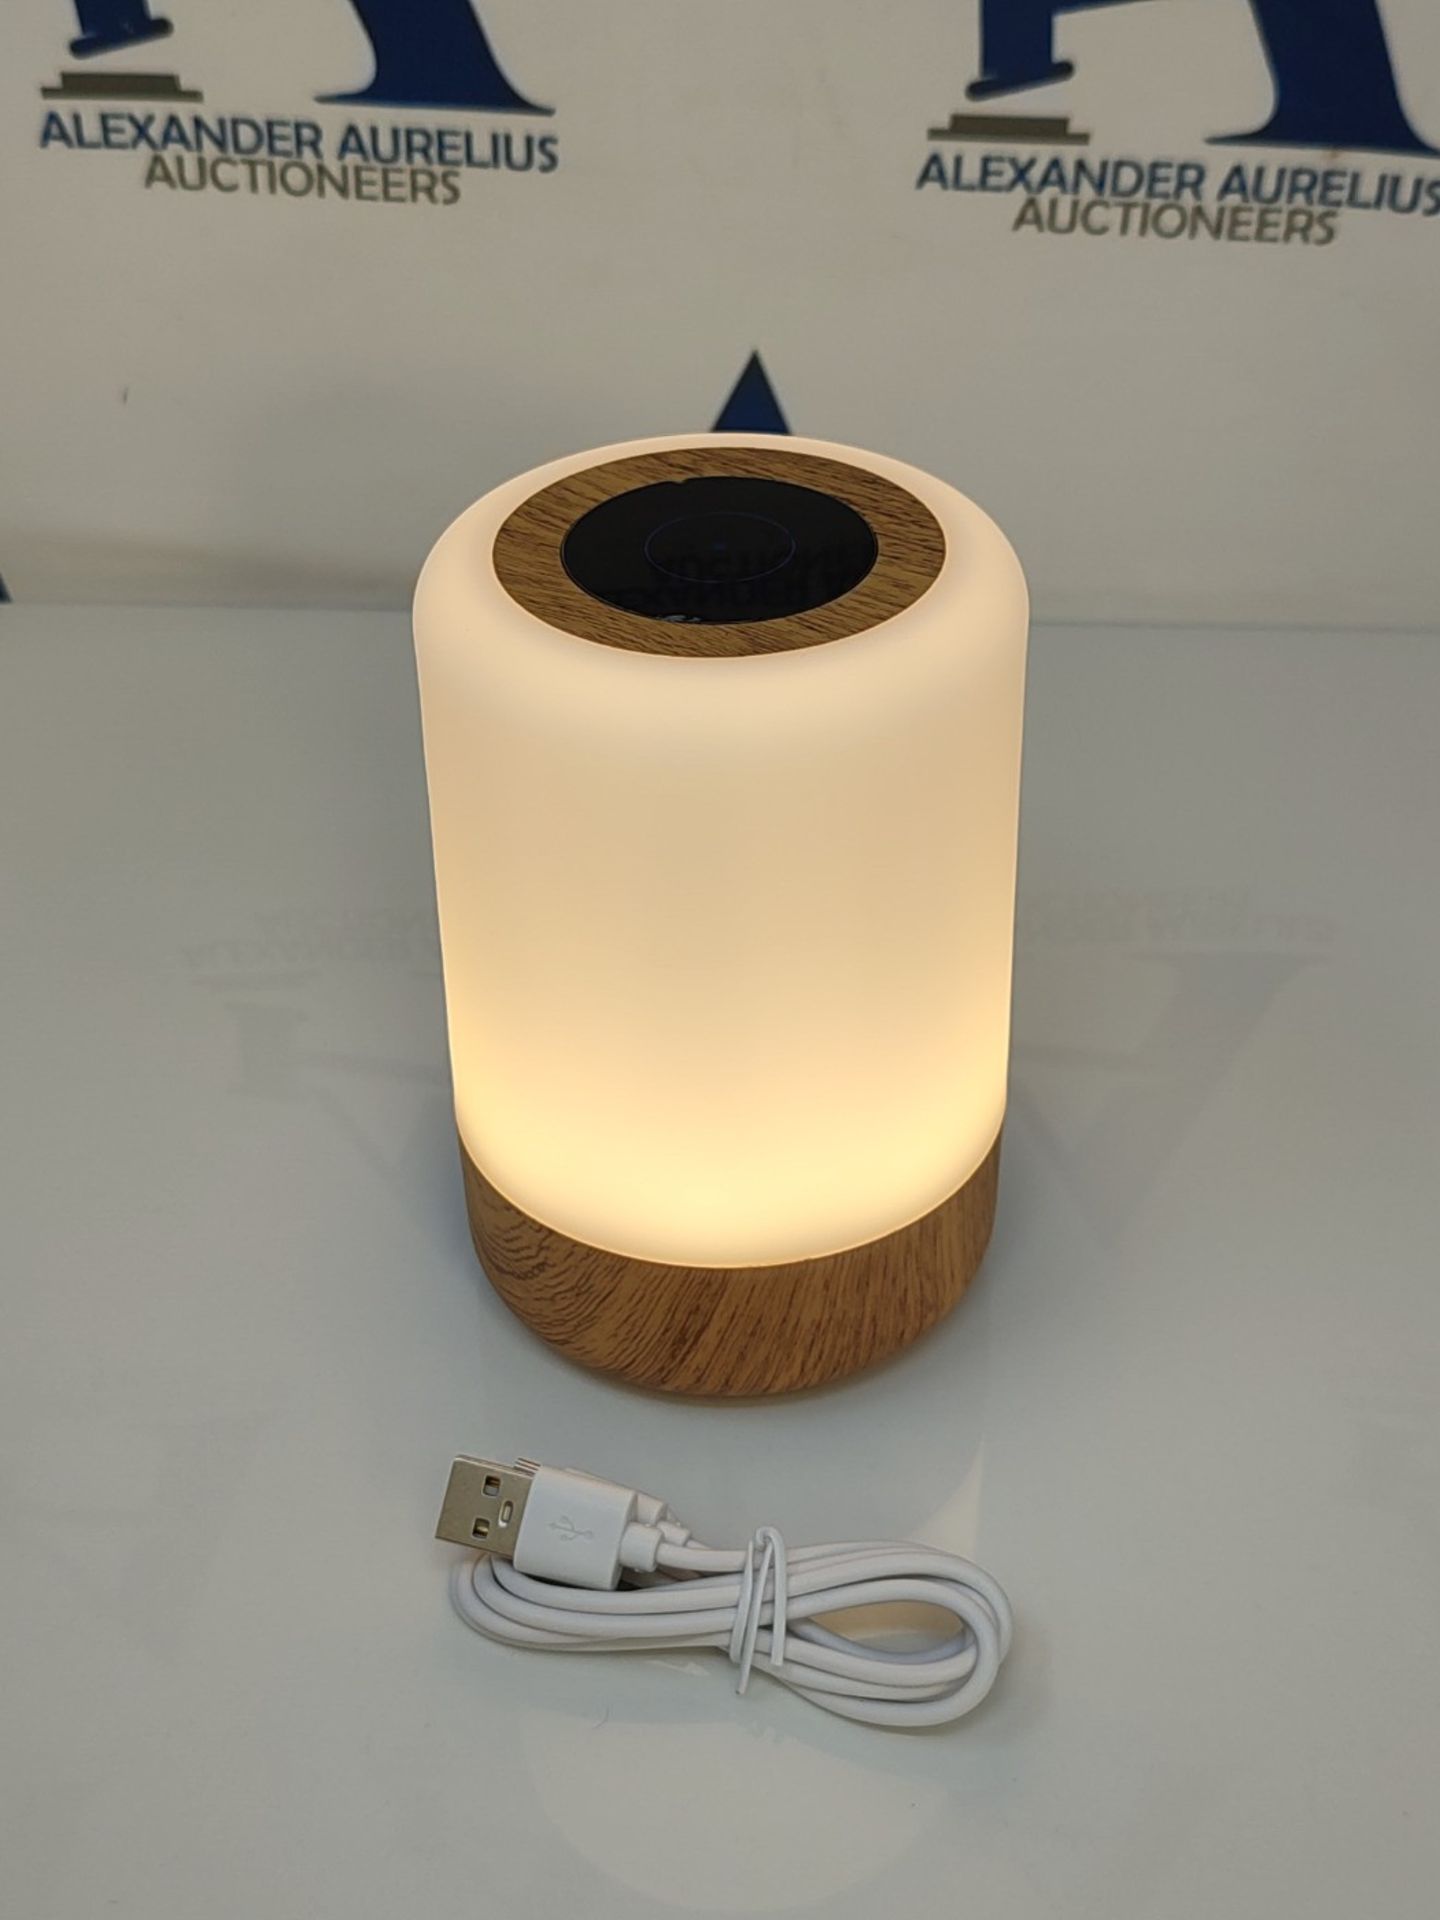 Gorvitor Dimmable Wireless Touch Lamps Bedside, Rechargeable Baby Night Light Batter - Image 2 of 2